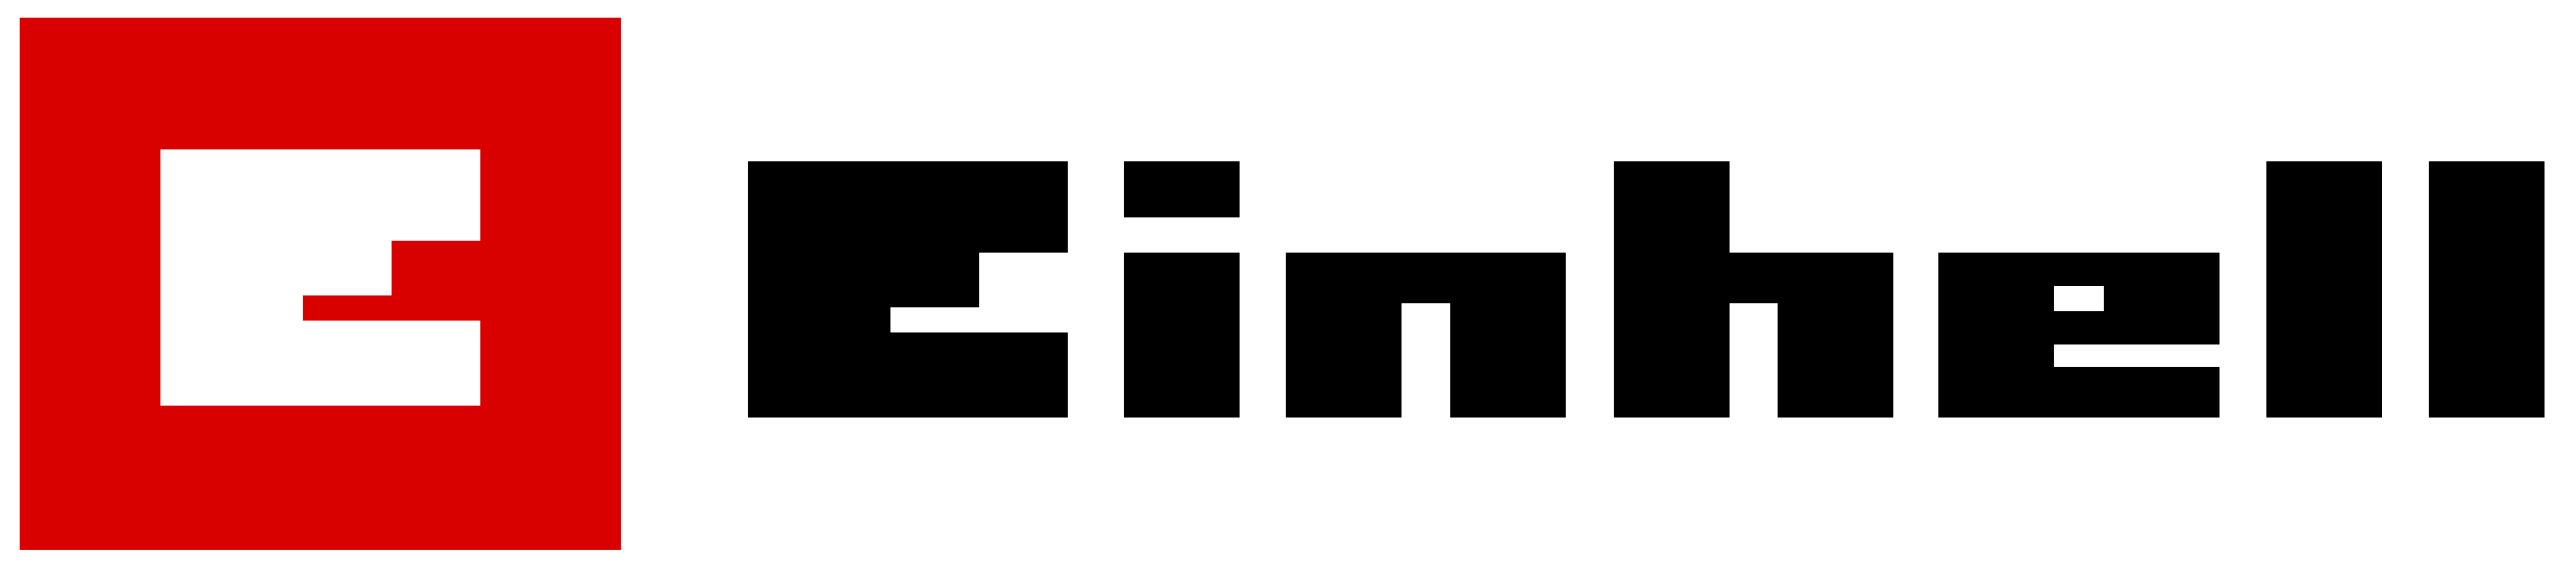 Логотип Einhell